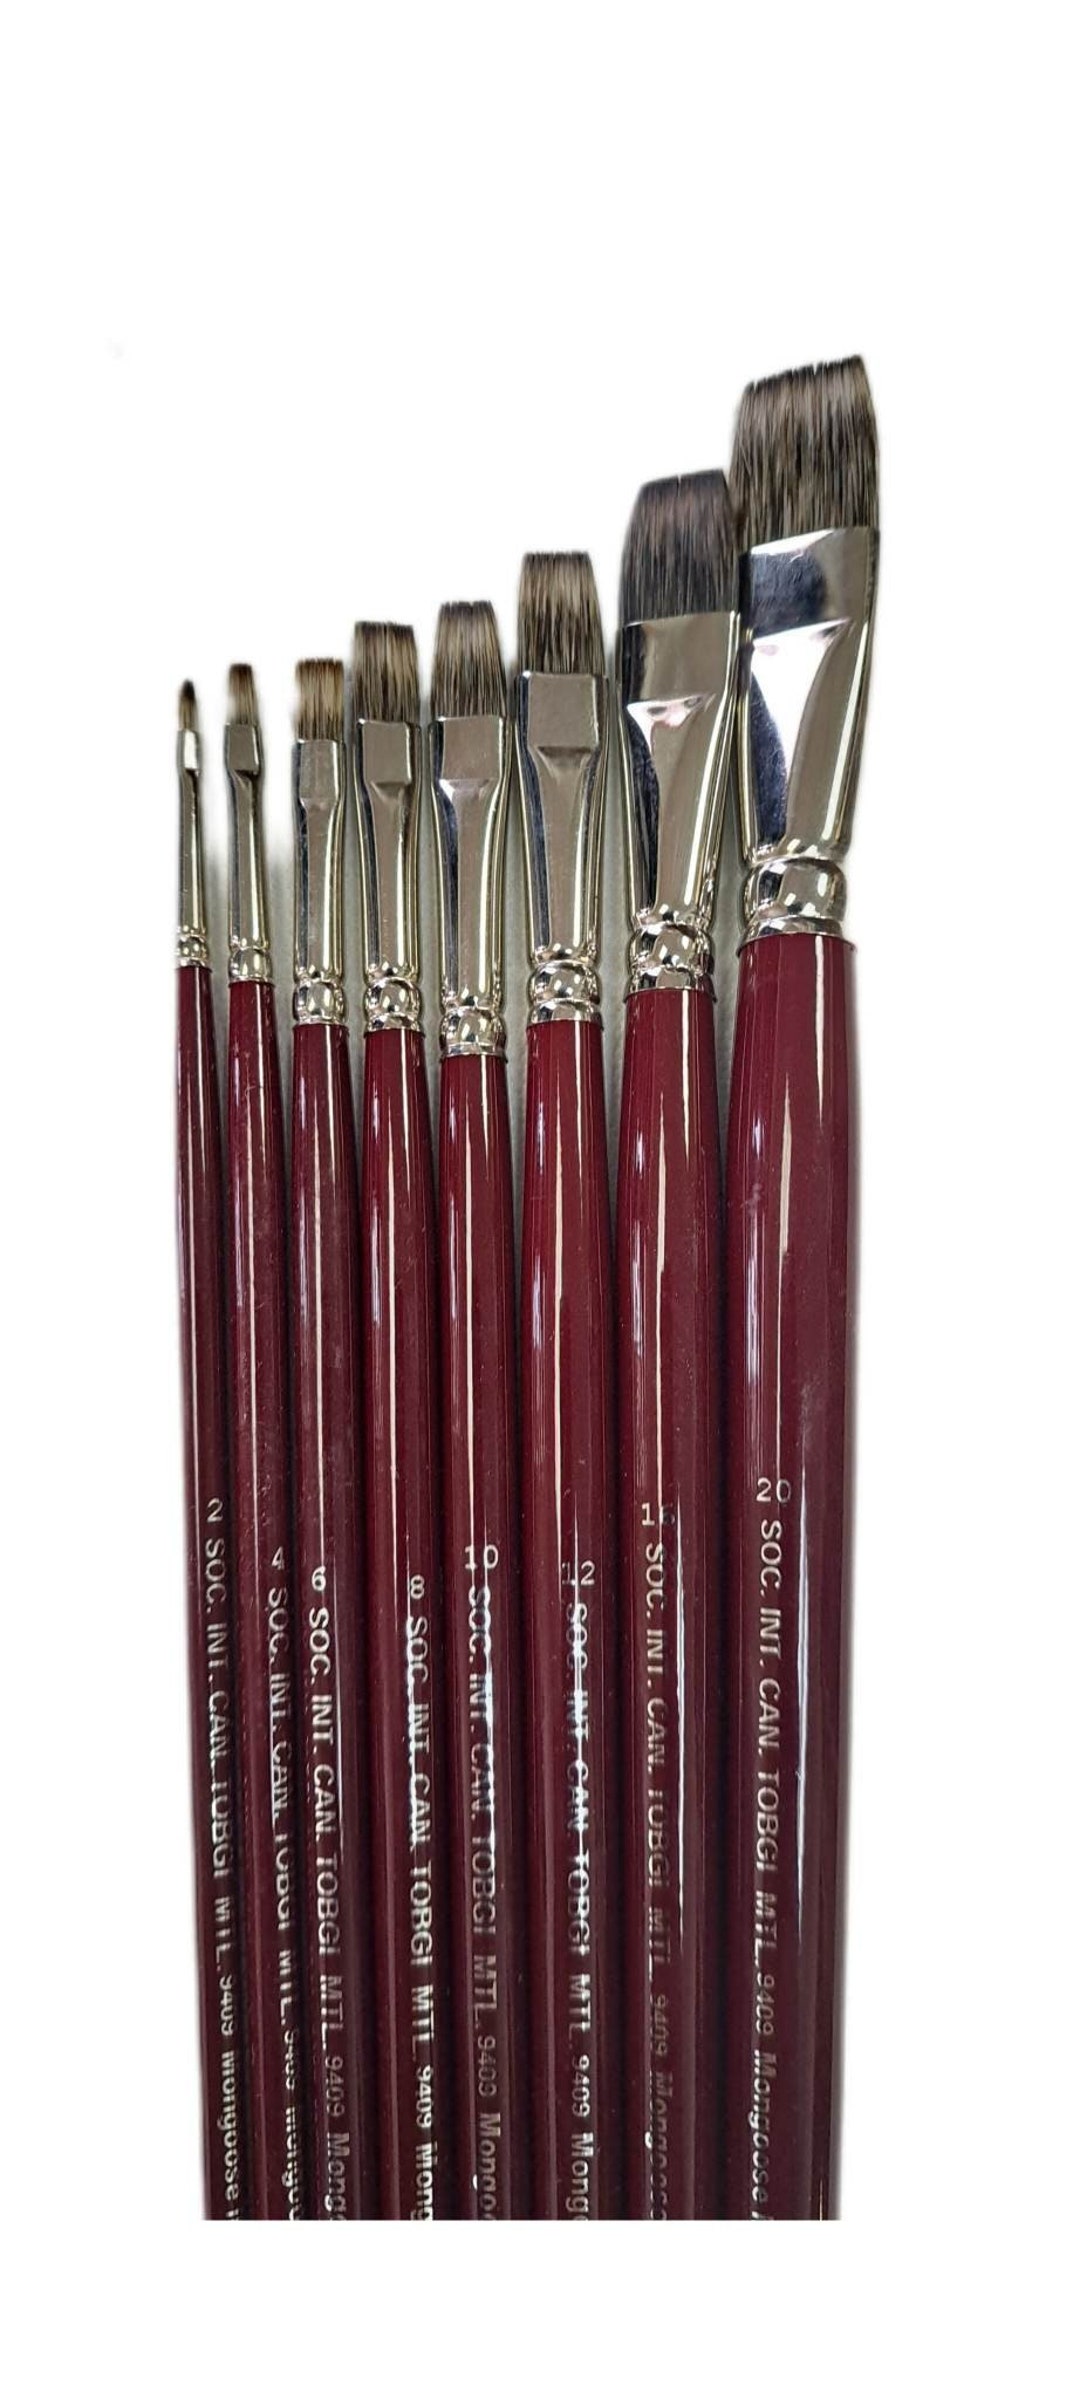 Rosemary & Co Series 33 Kolinsky Sable Brushes Full Range 